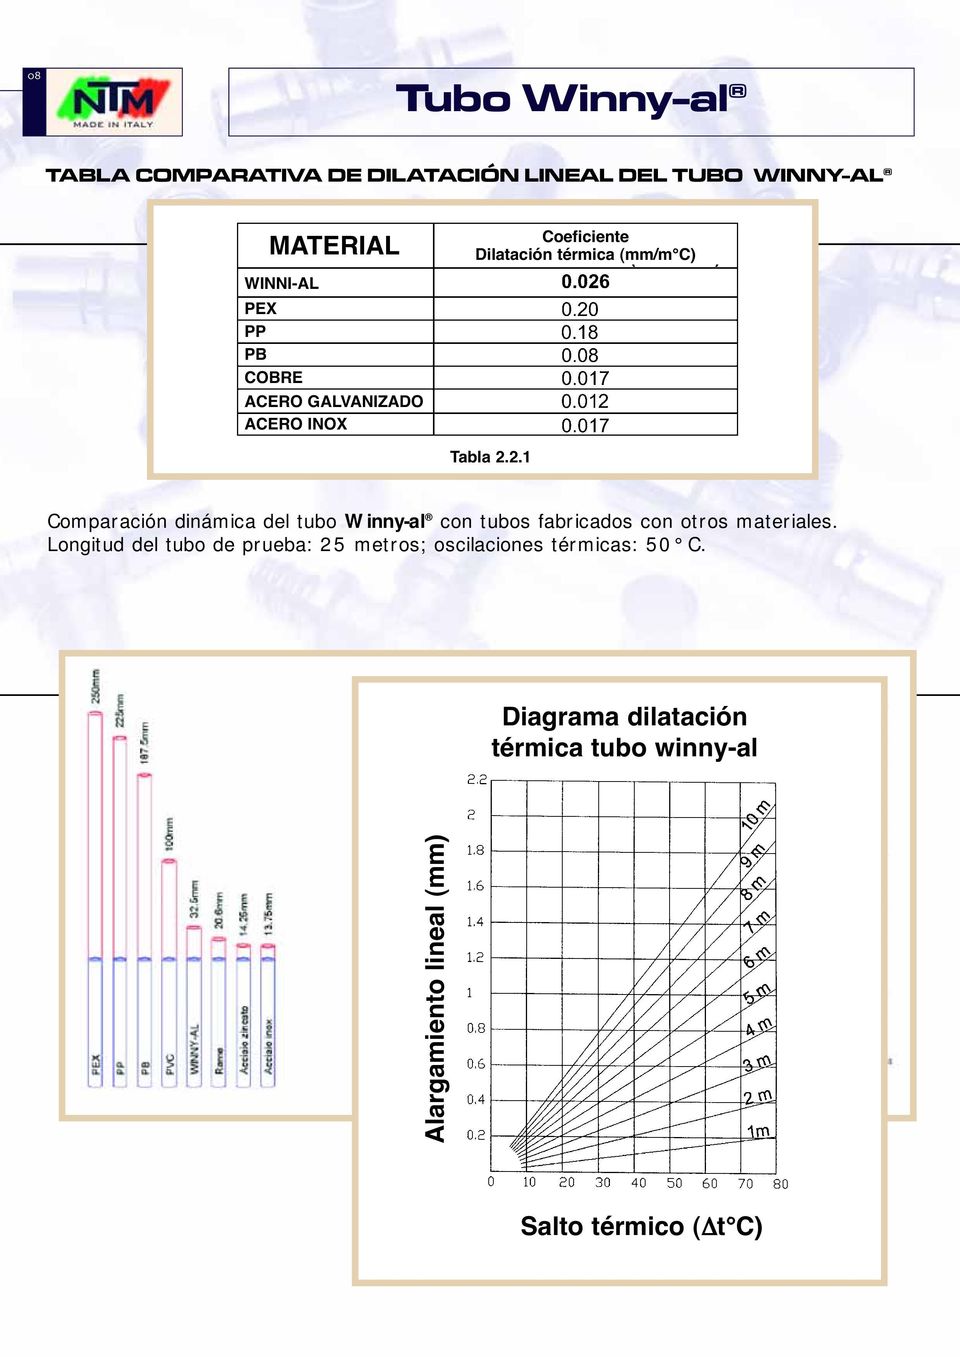 2.1 Comparación dinámica del tubo Winny-al con tubos fabricados con otros materiales.